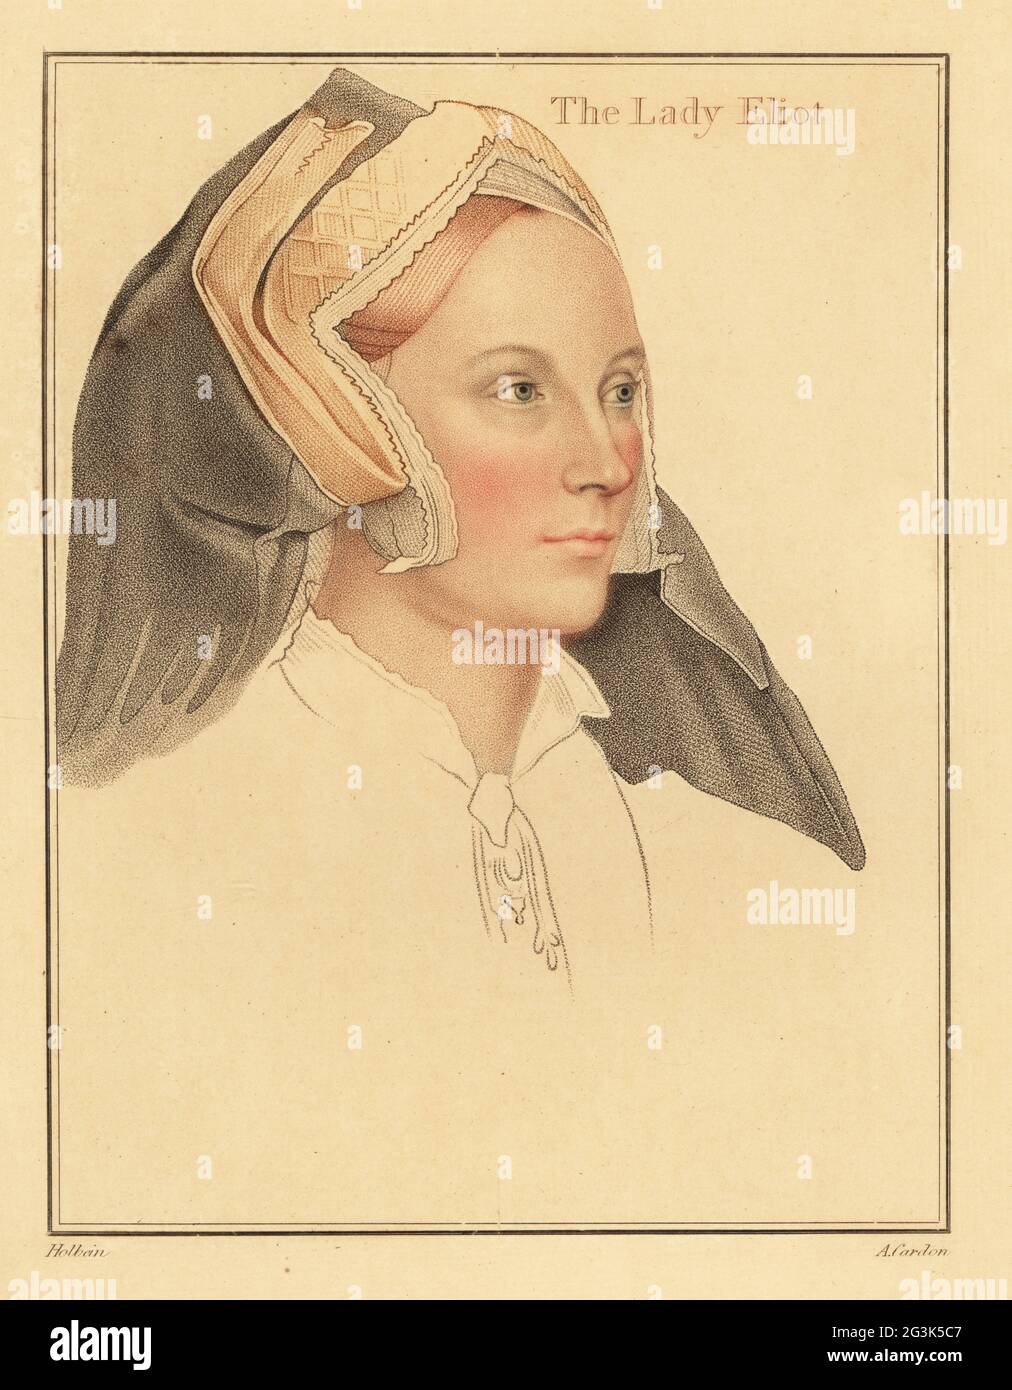 Margaret (née Abarrow), Lady Elyot, meurt en 1569. Épouse de Sir Thomas Elyot, diplomate et érudit anglais. Dans l'adresse de la hotte à pignon. La Dame Eliot. Gravure à l'effigie d'Anthony Cardon sur une plaque de coperplate de couleur main après un portrait de Hans Holbein le plus jeune à partir d'imitations de dessins originaux de Hans Holbein, John Chamberlaine, Londres, 1812. Banque D'Images